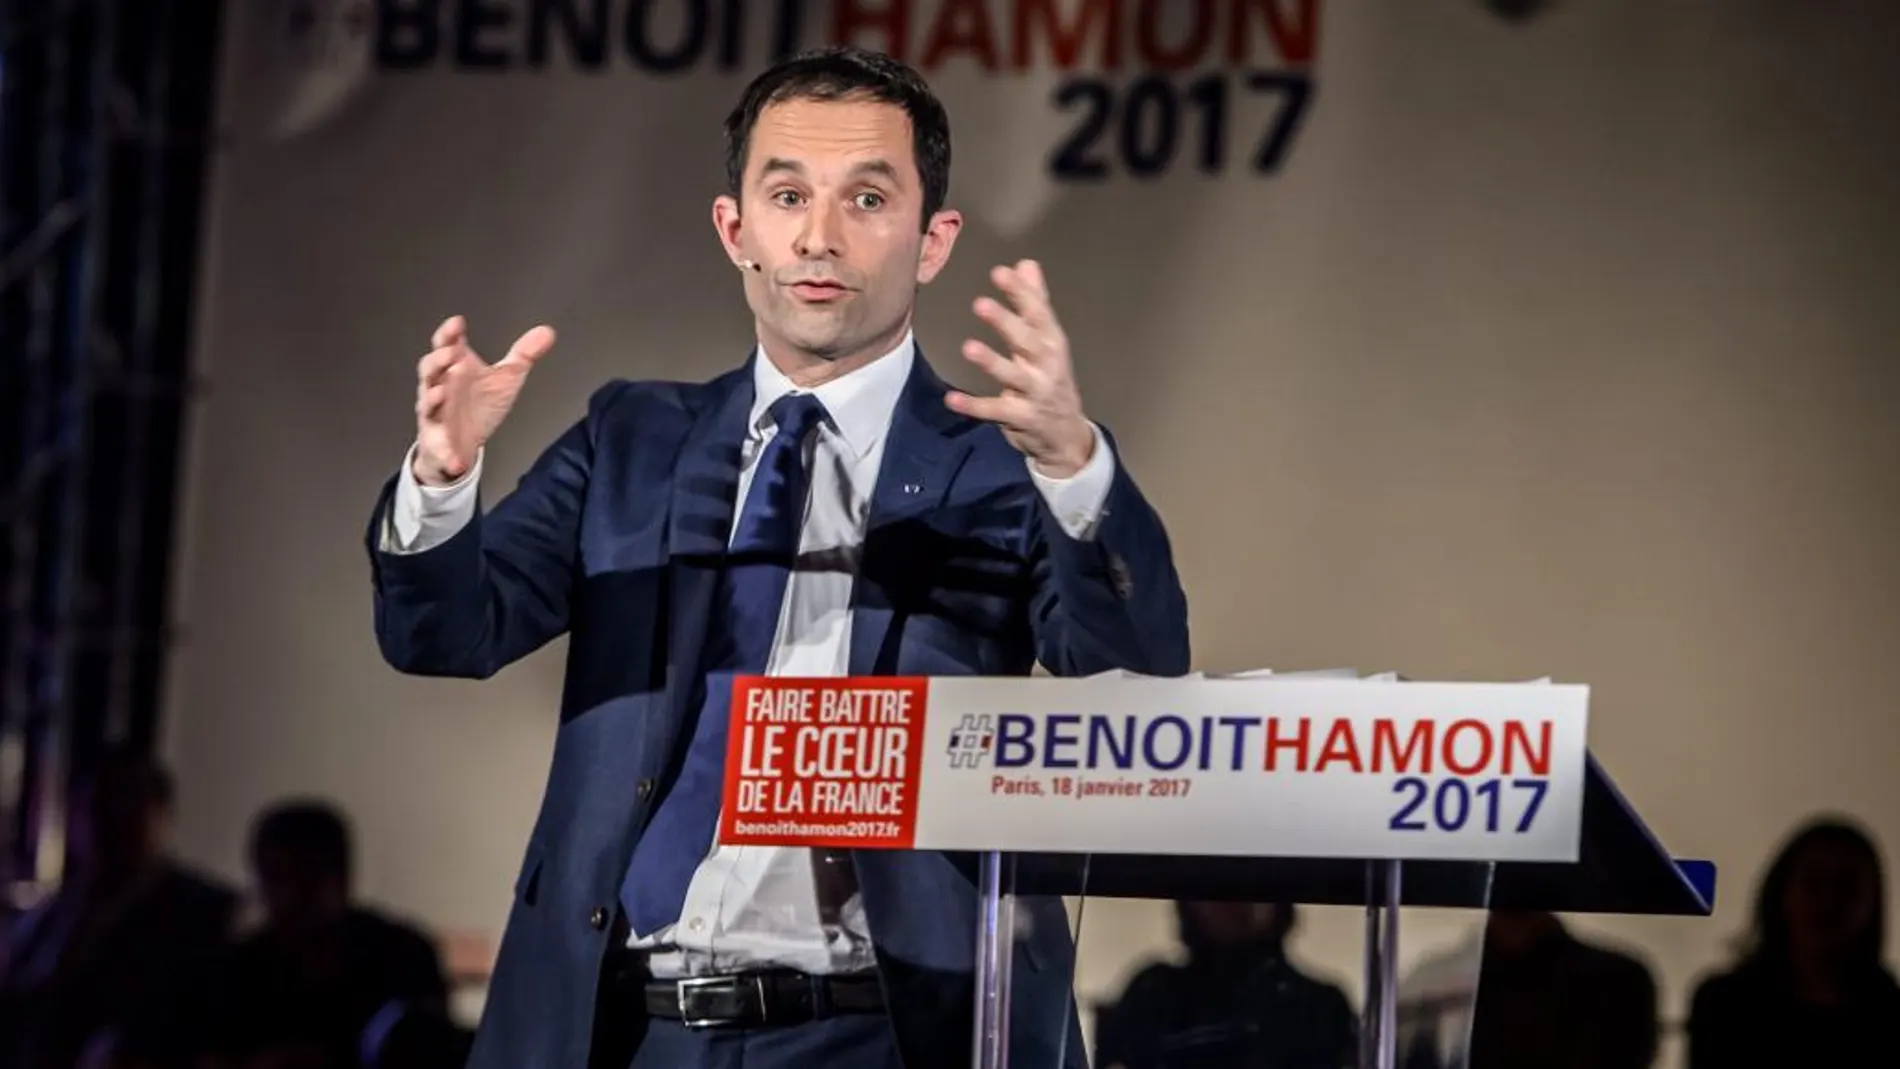 El miembro del Partido Socialista francés Benoit Hamon durante un evento de campaña